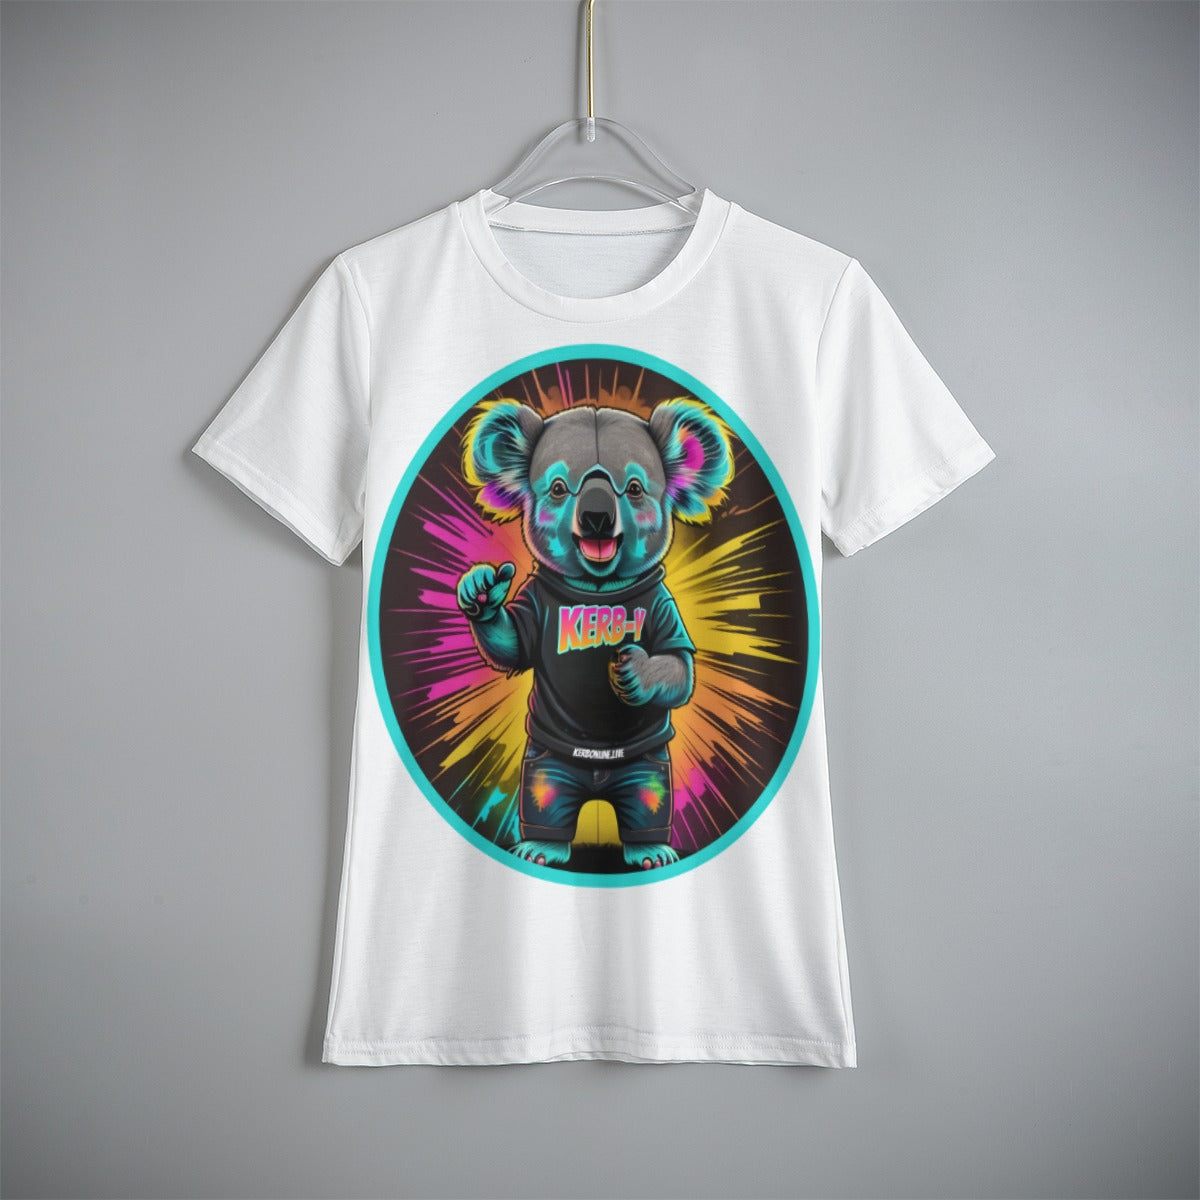 DJ KERBY Neon Print Kid's T-Shirt